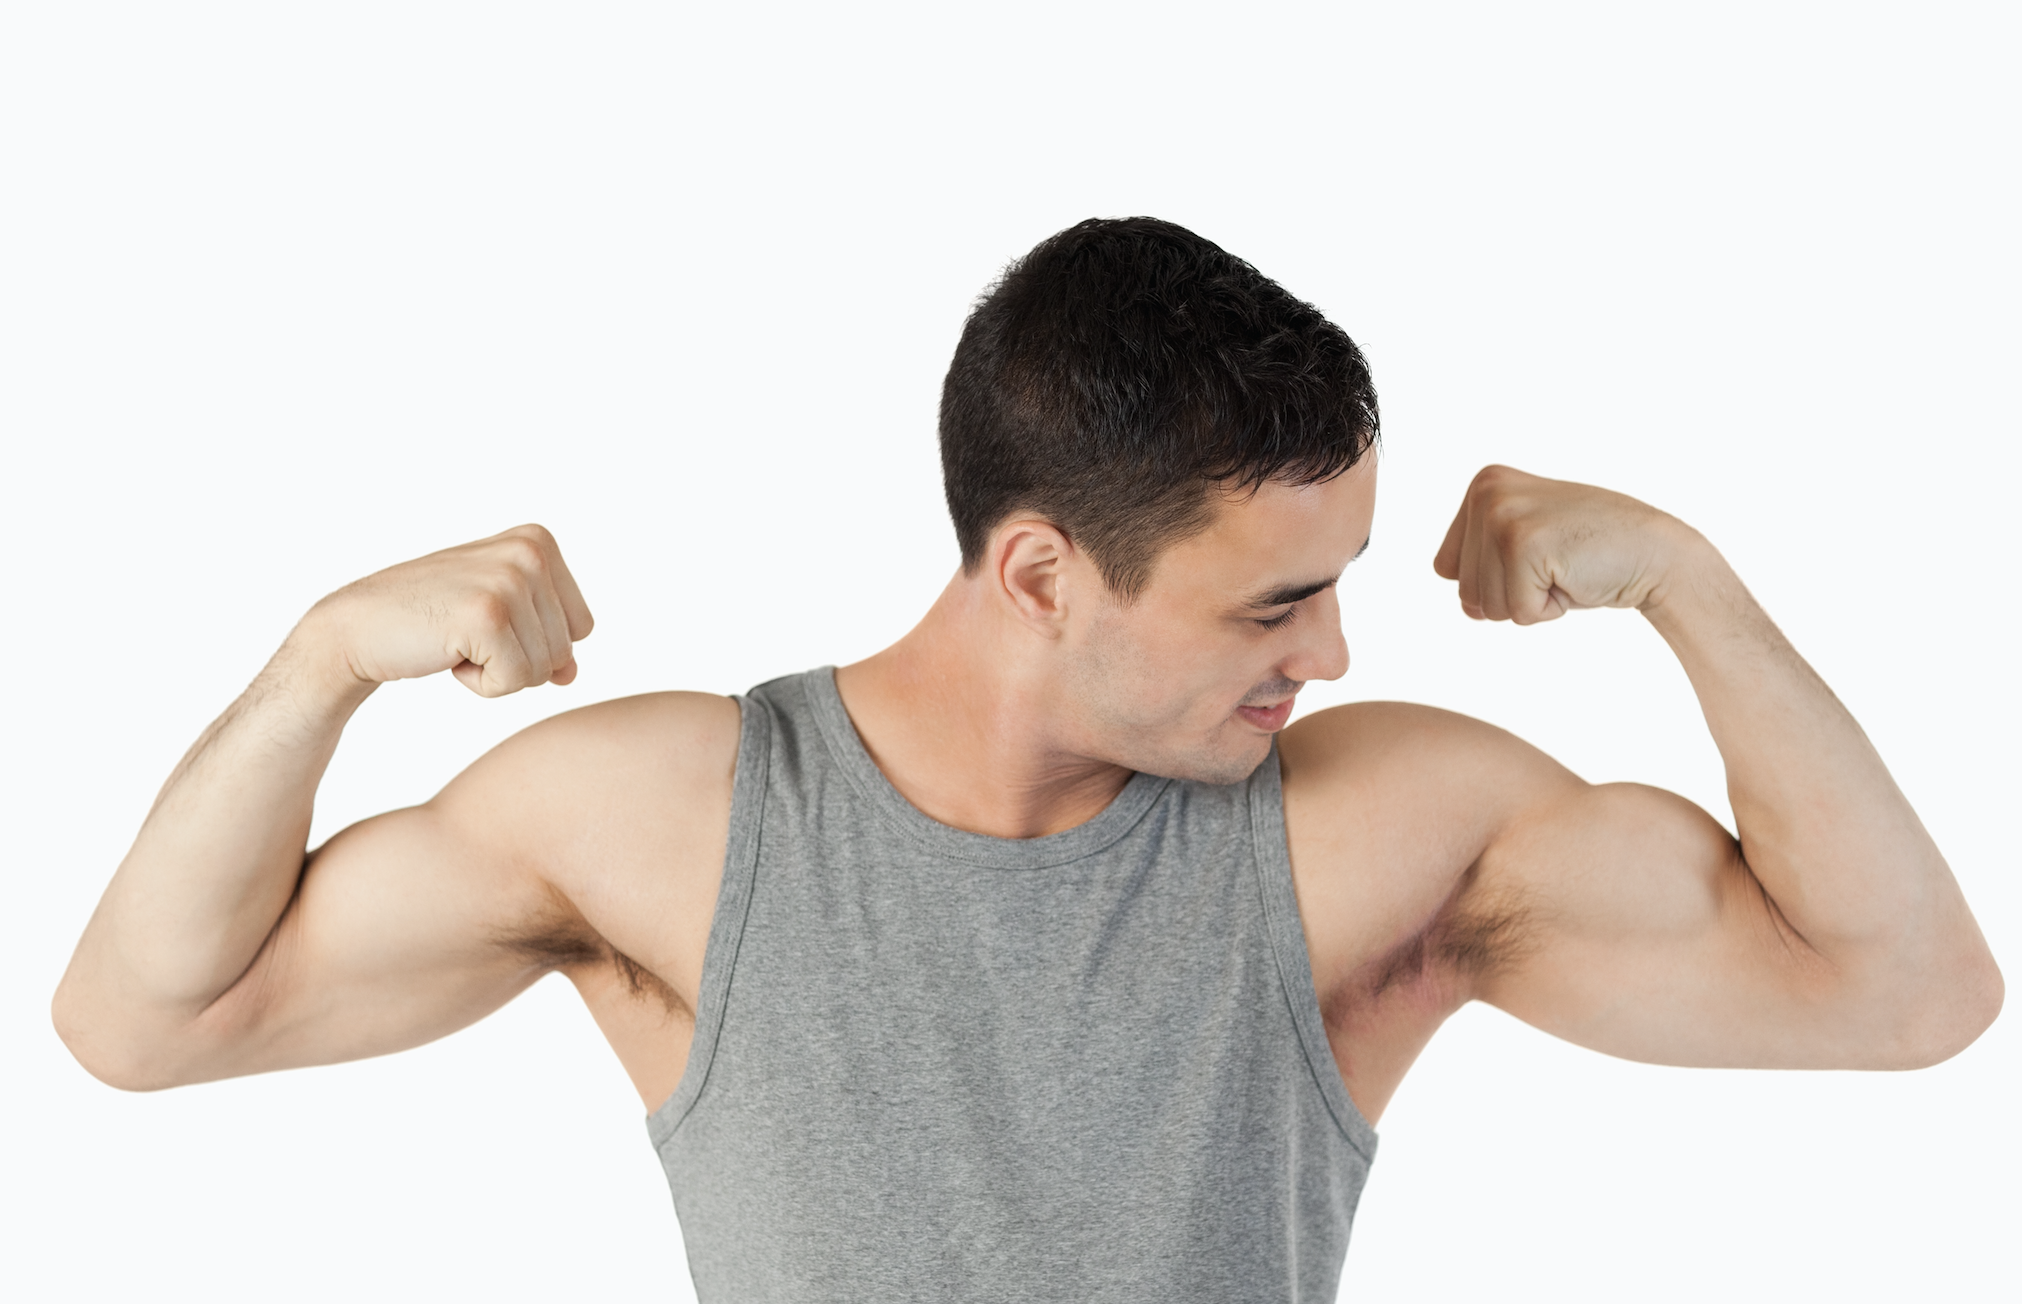 Ejercicios para hacer biceps